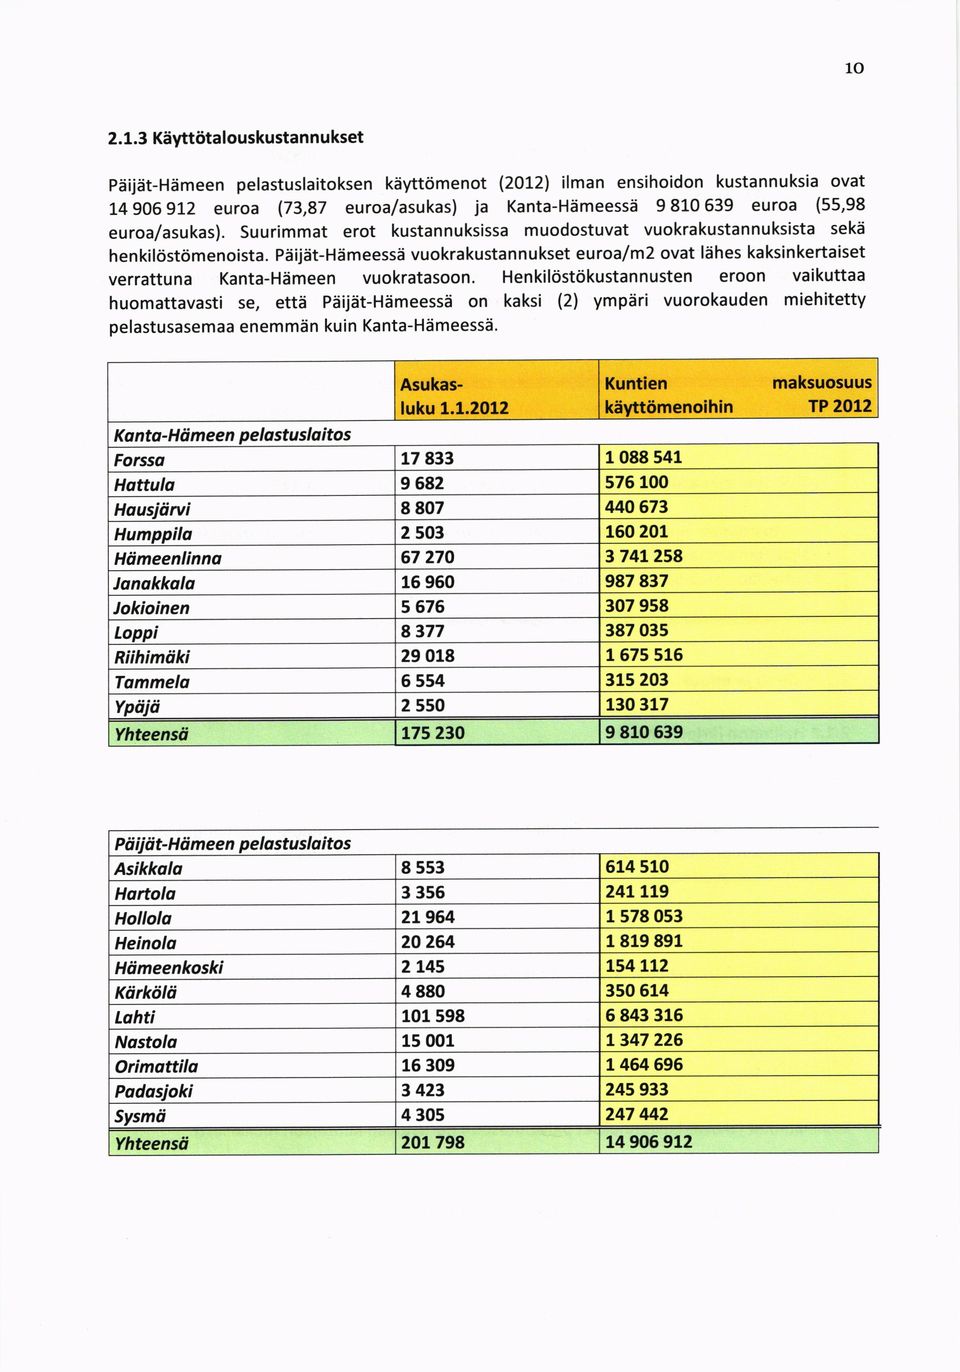 Piiijiit-Hiimeessd vuokrakustannukset euroaf m2 ovat l6hes kaksinkertaiset verrattuna Kanta-Hdmeen vuokratasoon.